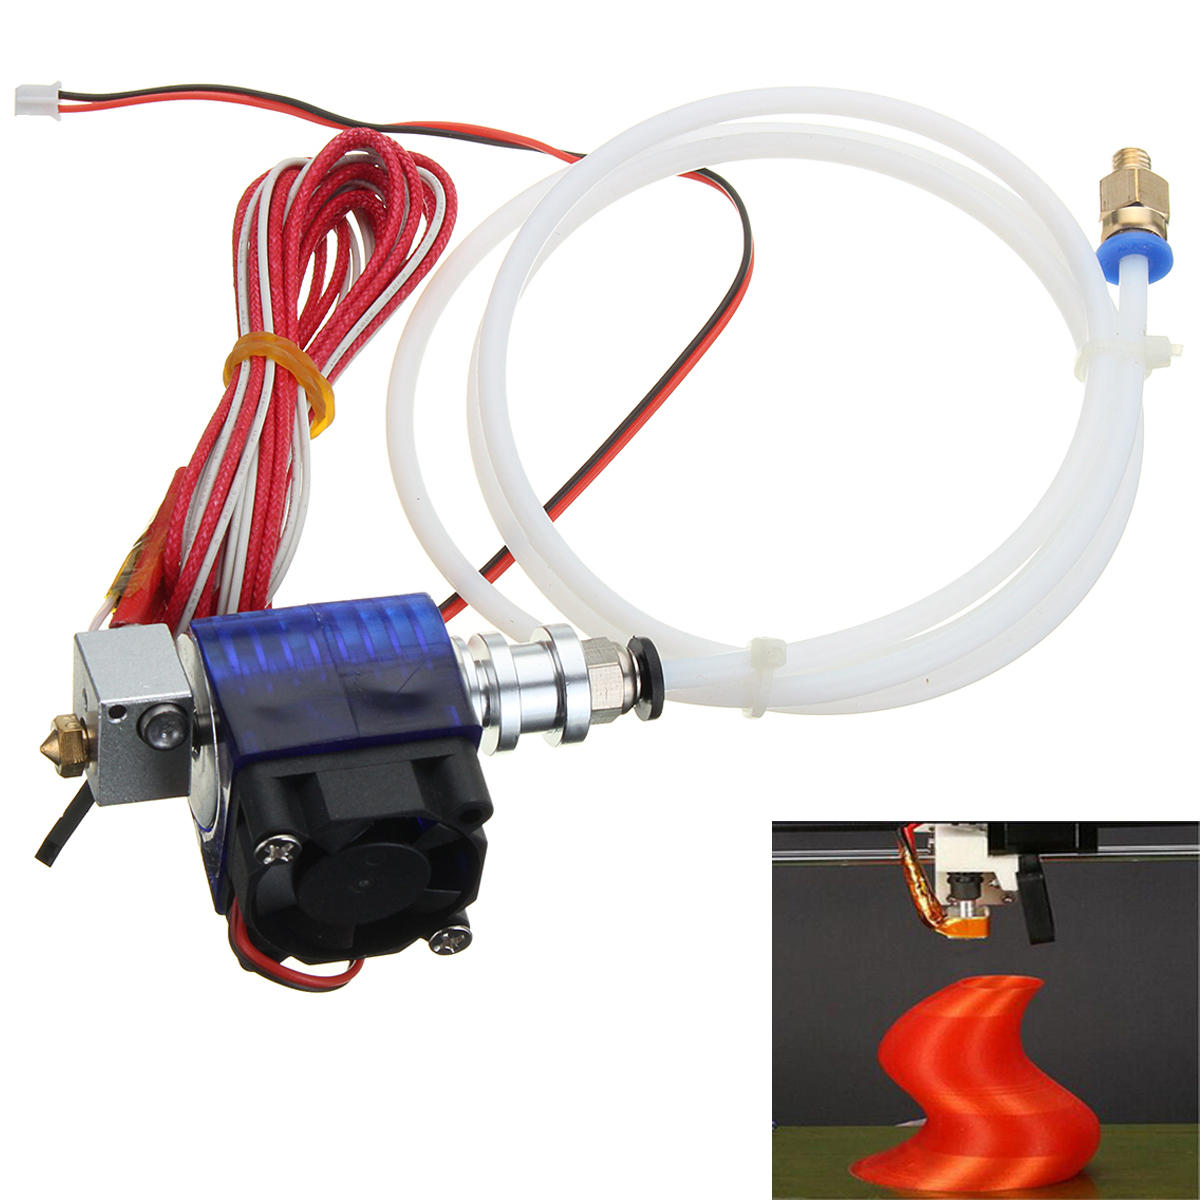 

1.75mm 0.4mm Filament Bowden Extruder J-head Hotend For 3D Printer Part